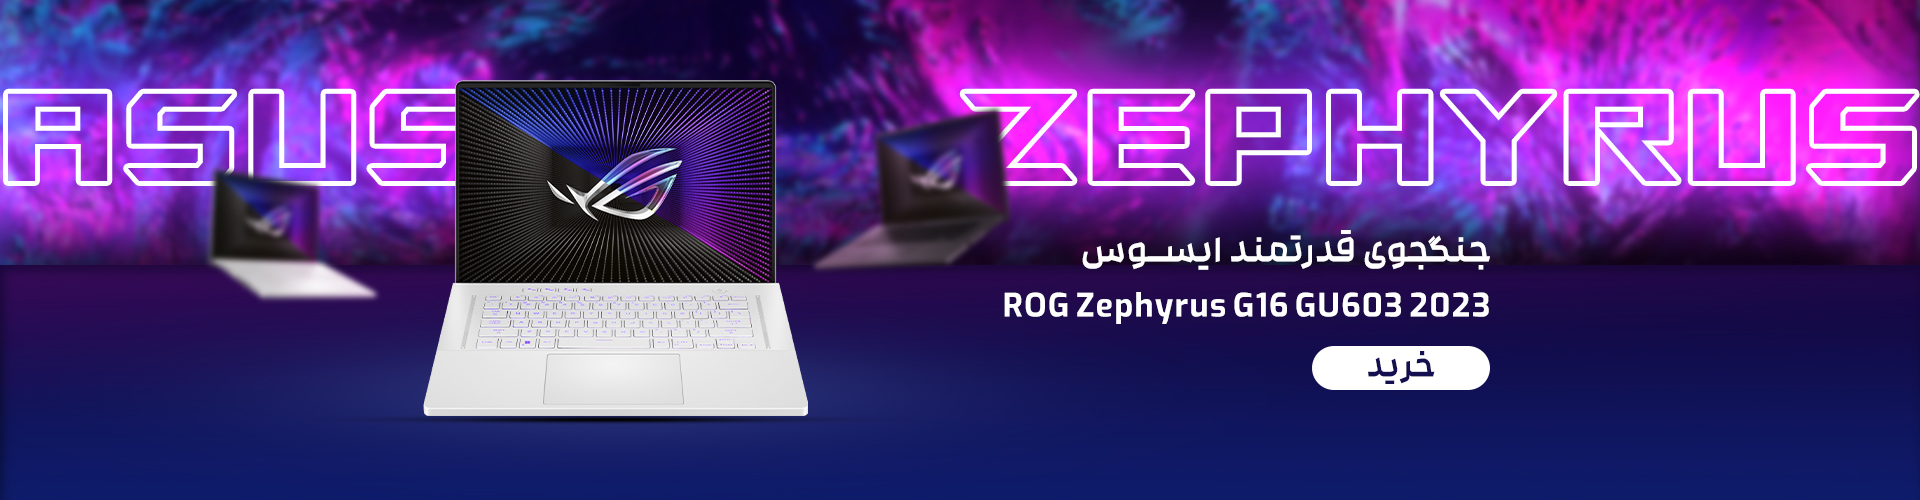 ROG Zephyrus G16 GU603